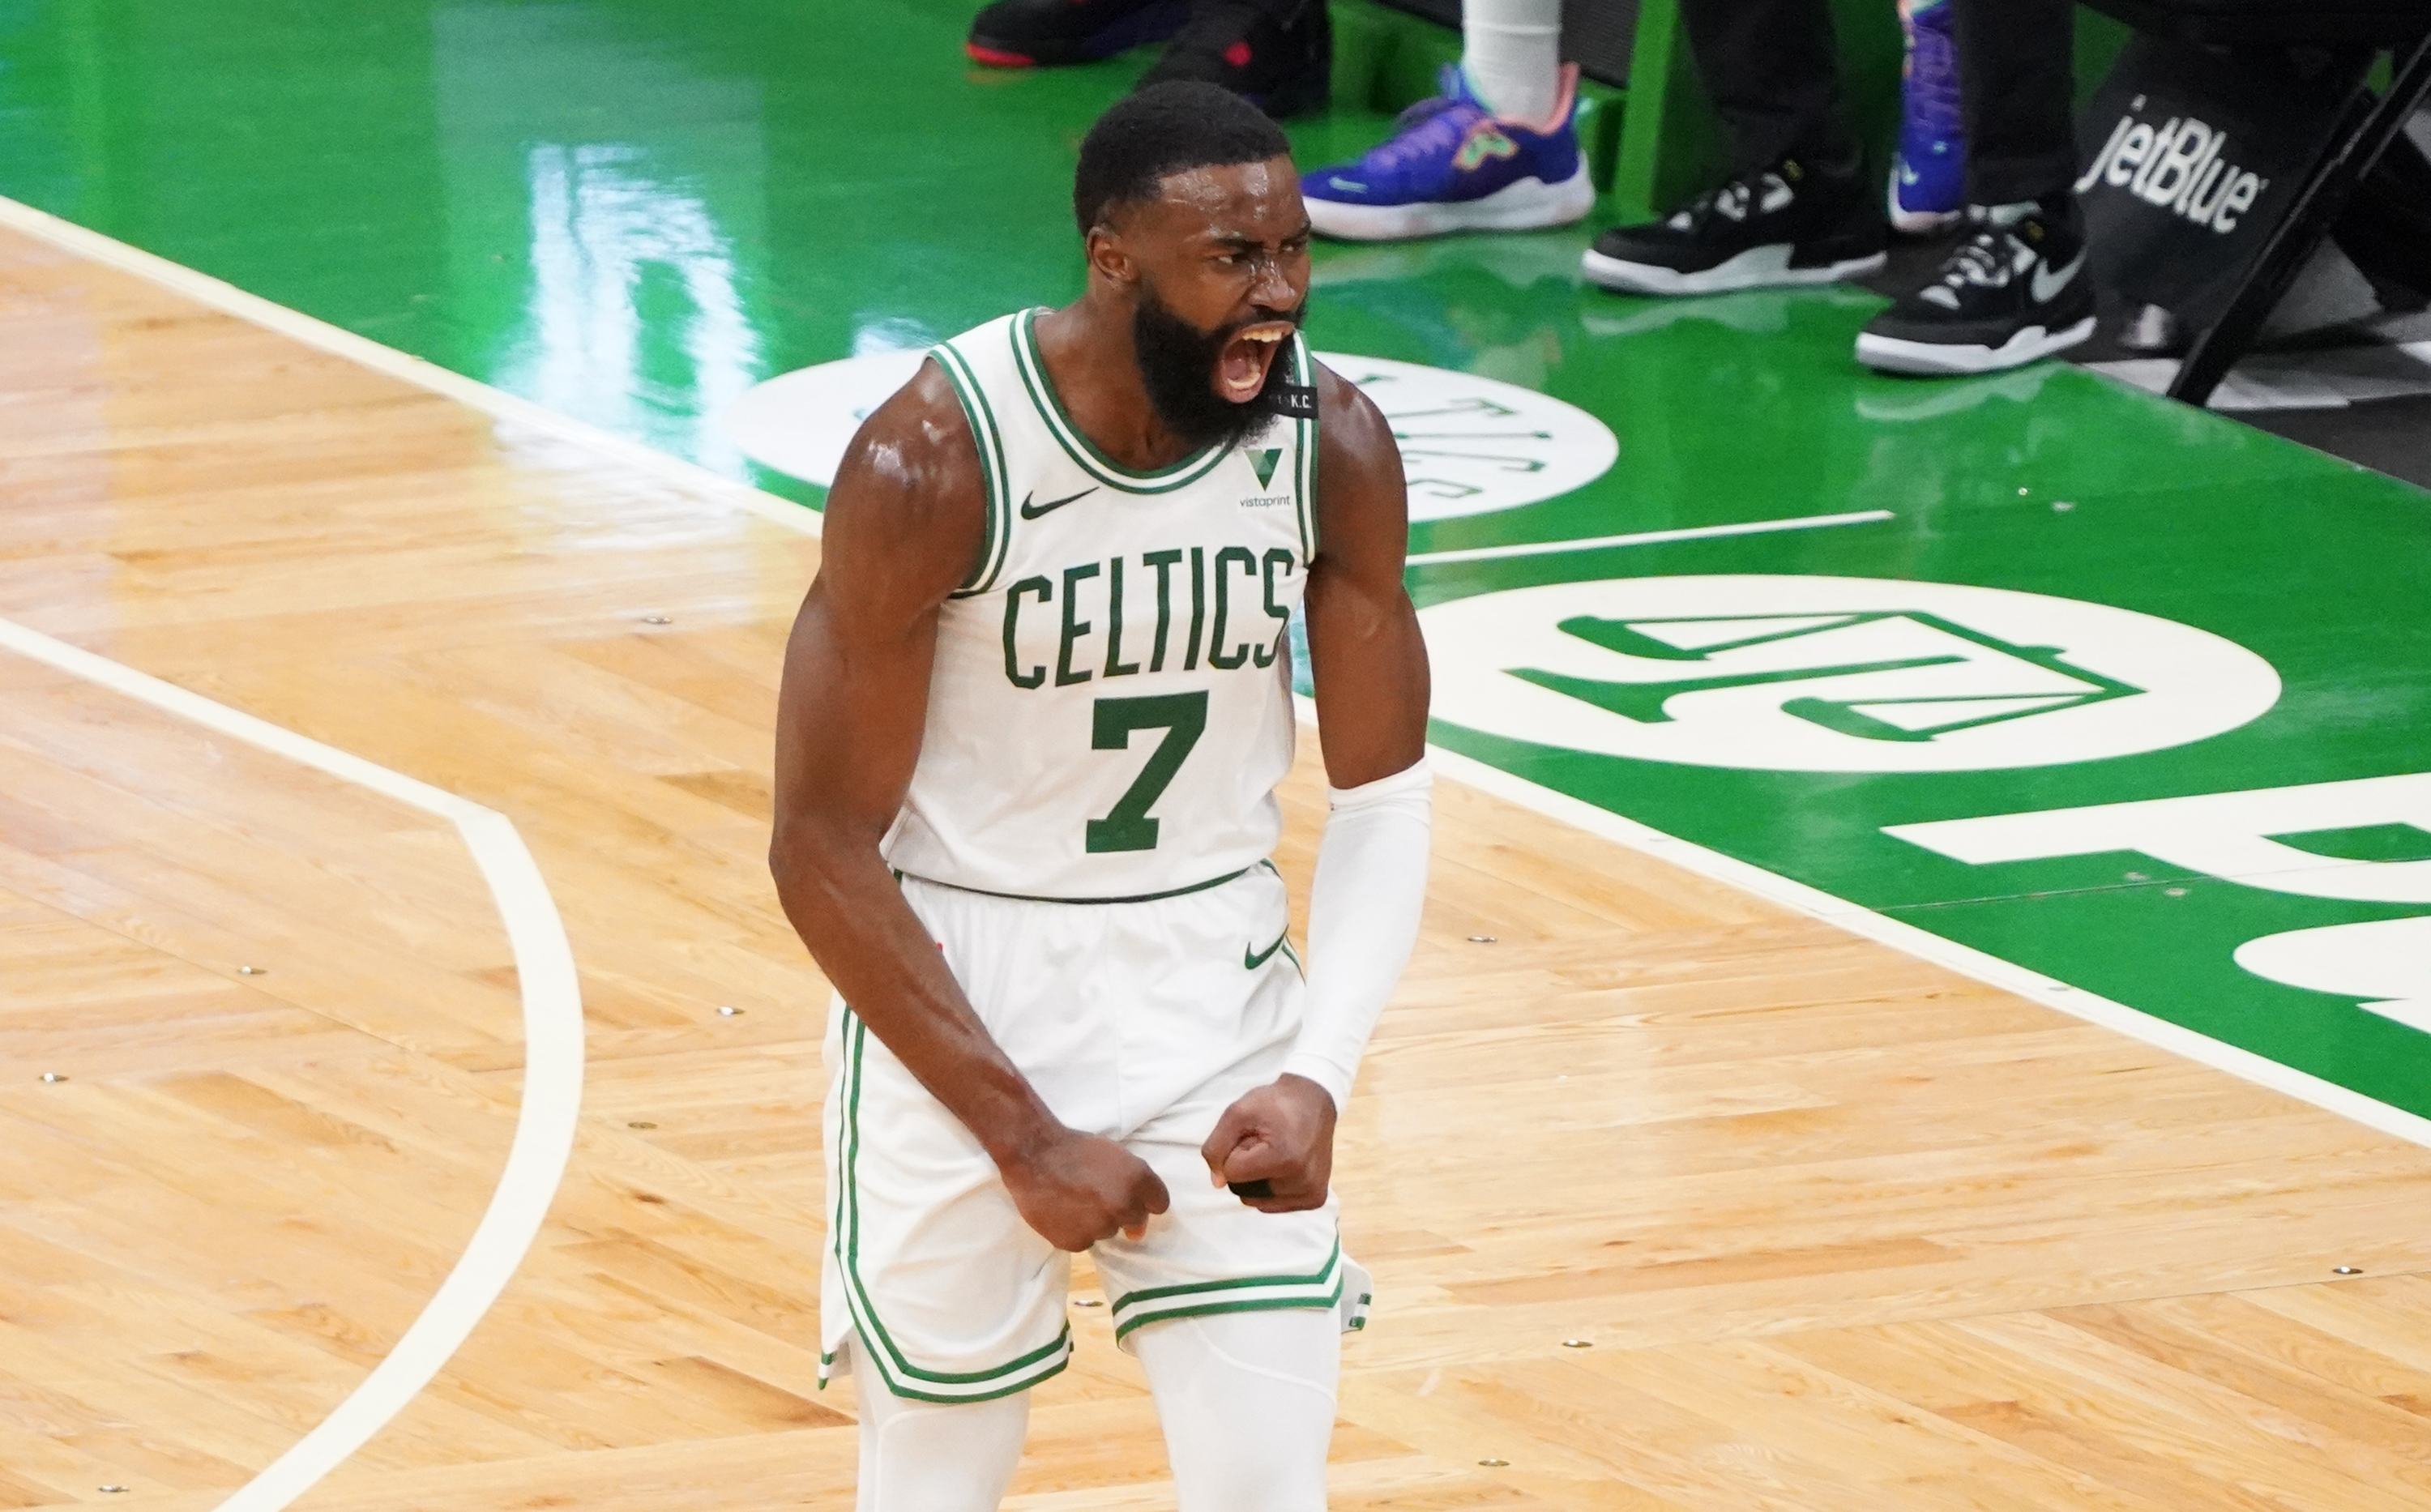 NBA: San Antonio Spurs at Boston Celtics